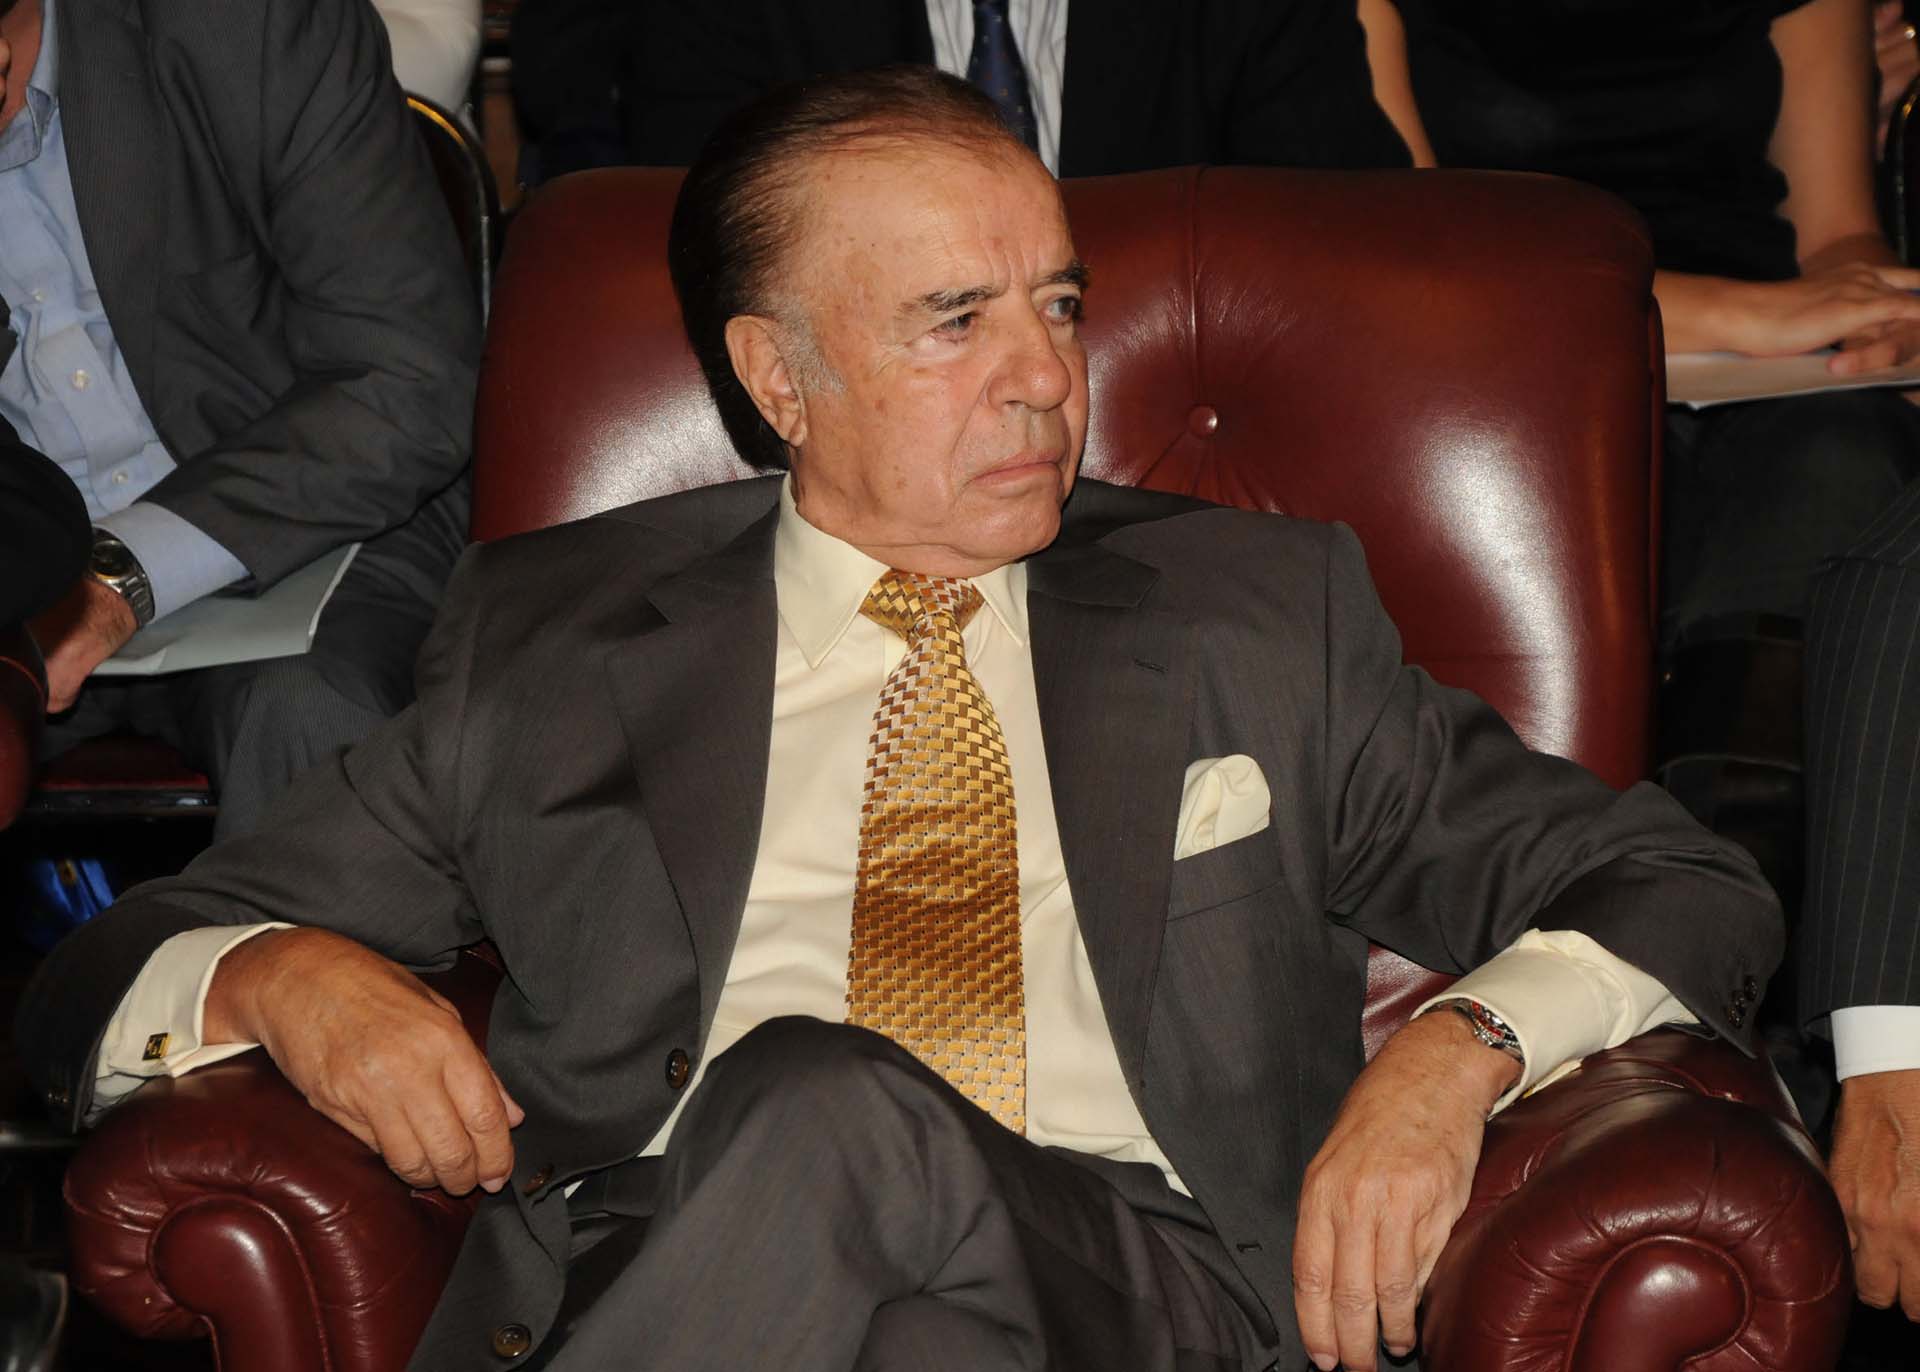 El ex presidente Carlos Menem en una reunión del Senado, donde permaneció los últimos 15 años